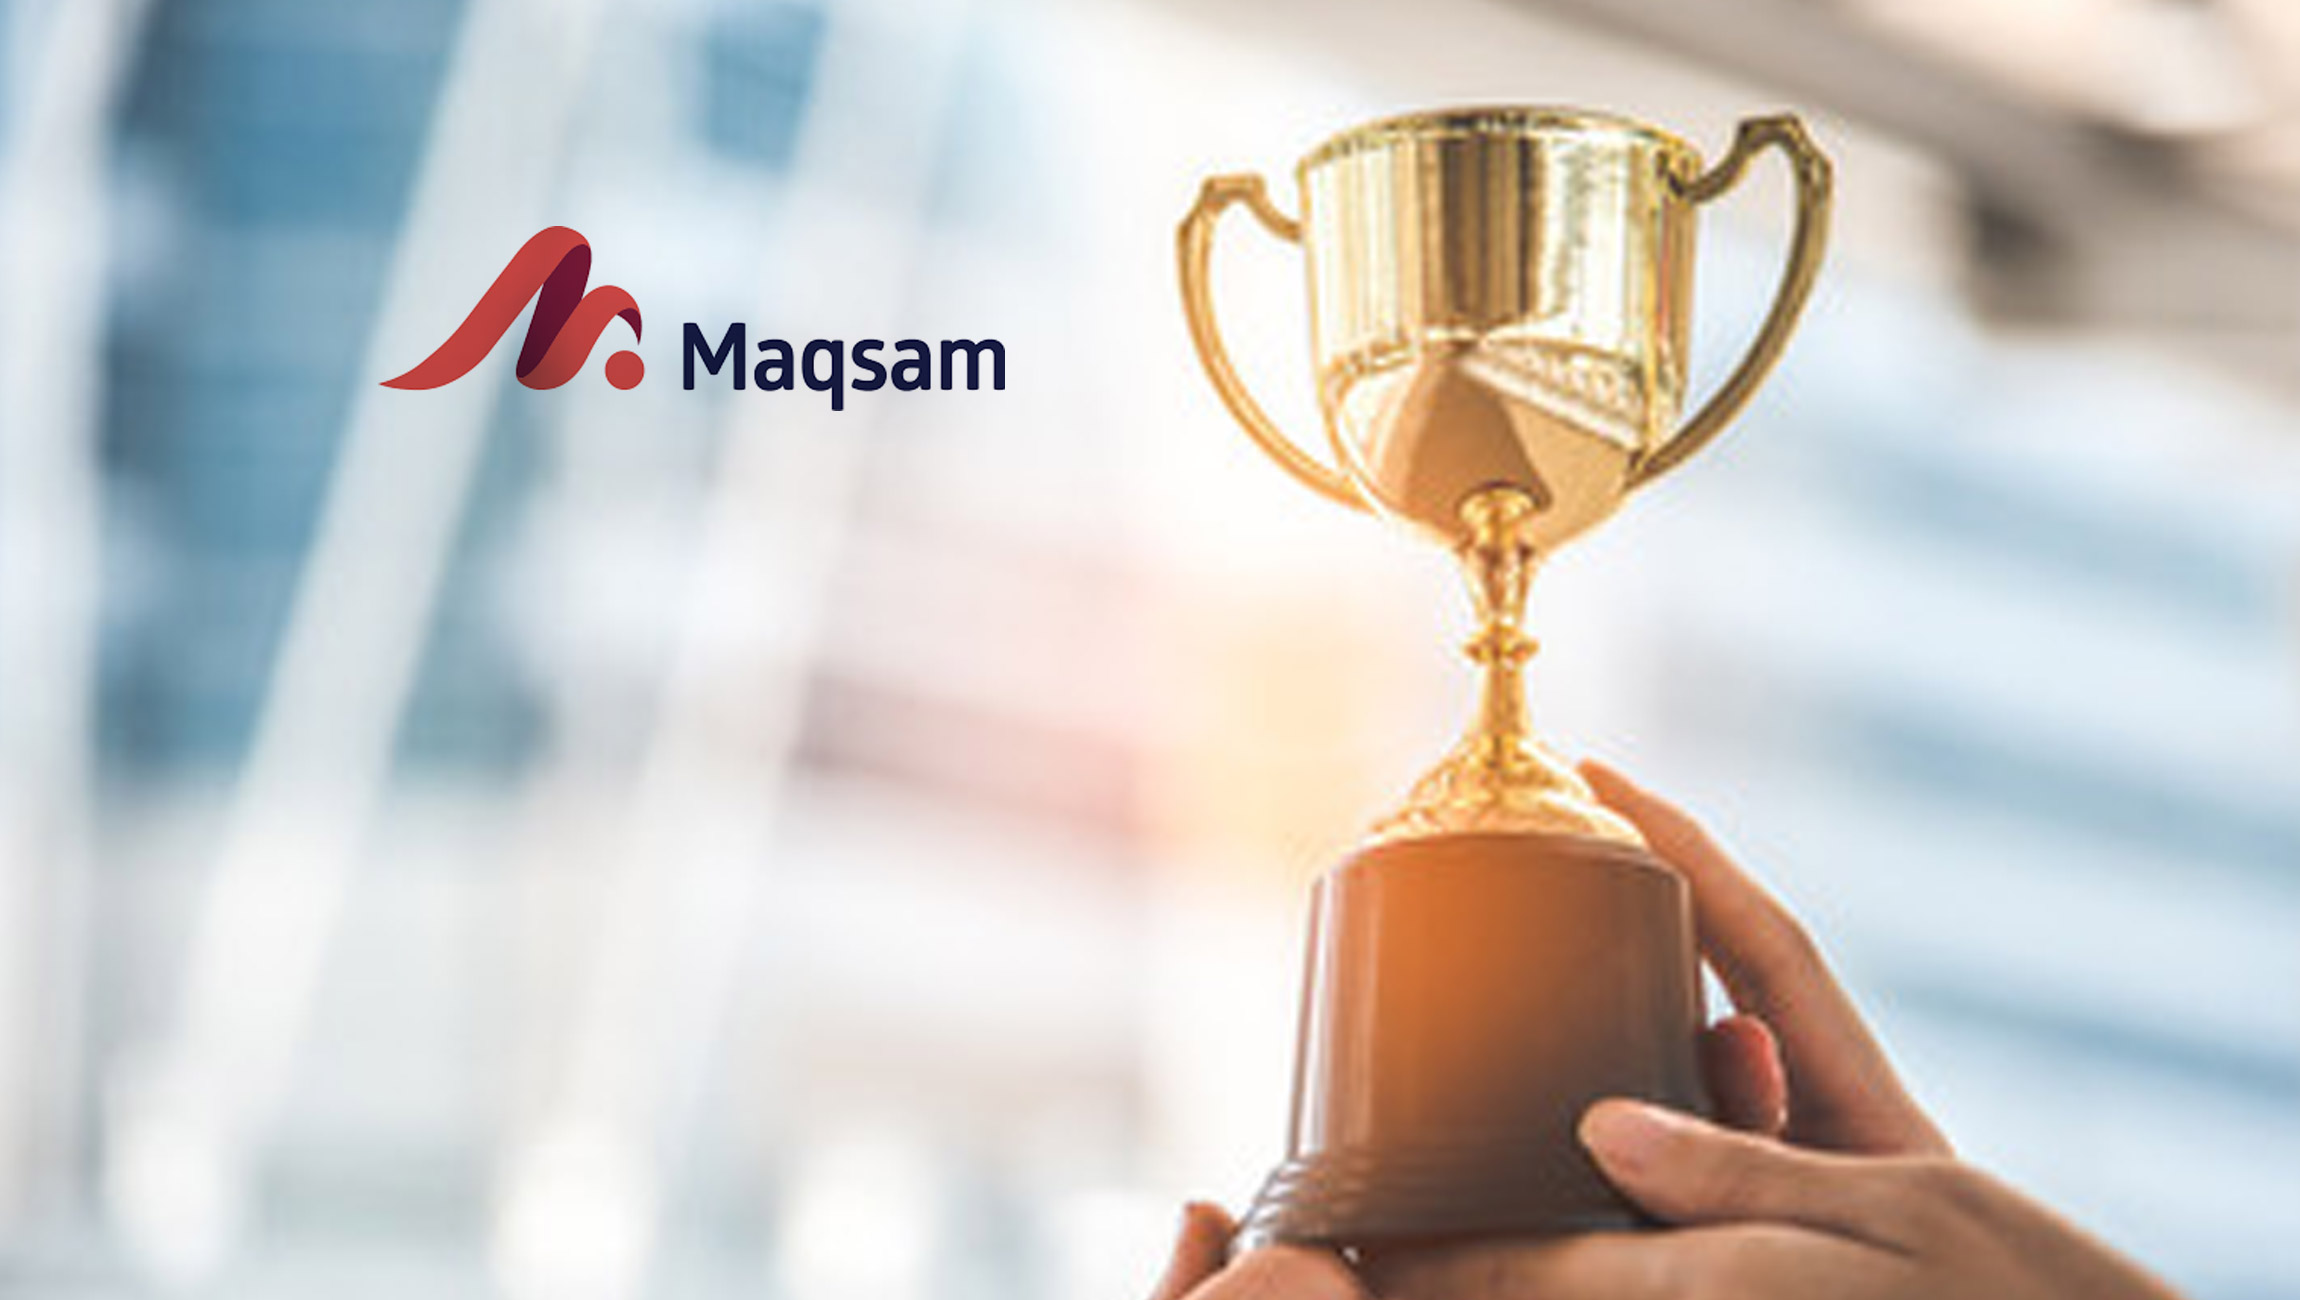 Maqsam-Wins-Top-Award-Of-_250_000-At-Global-Tech-Expo-In-Riyadh